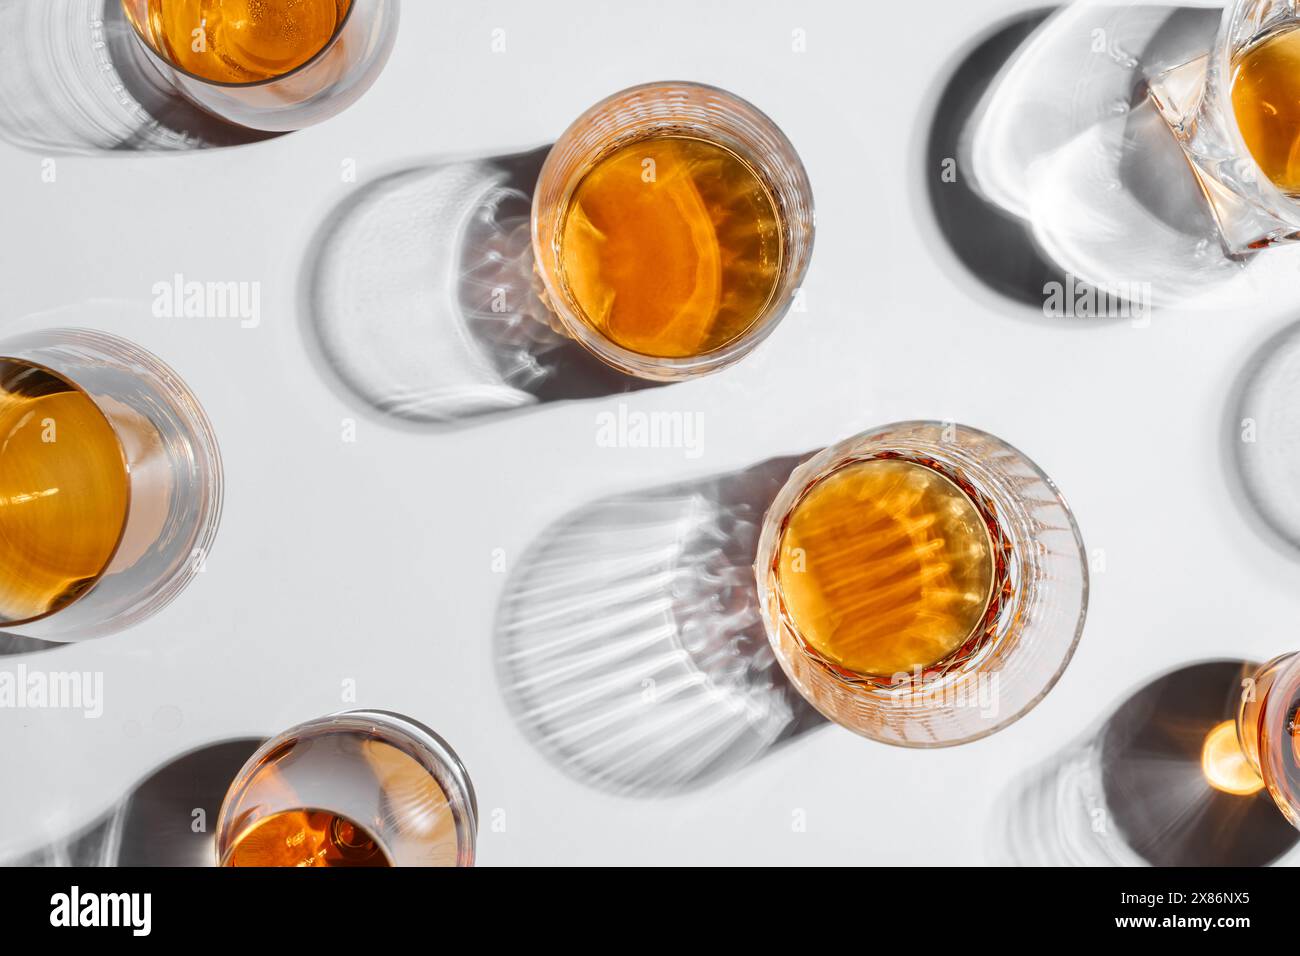 Vue de dessus de verres de forme différente avec whisky avec ombre sur la table blanche. Concept d'alcool Banque D'Images